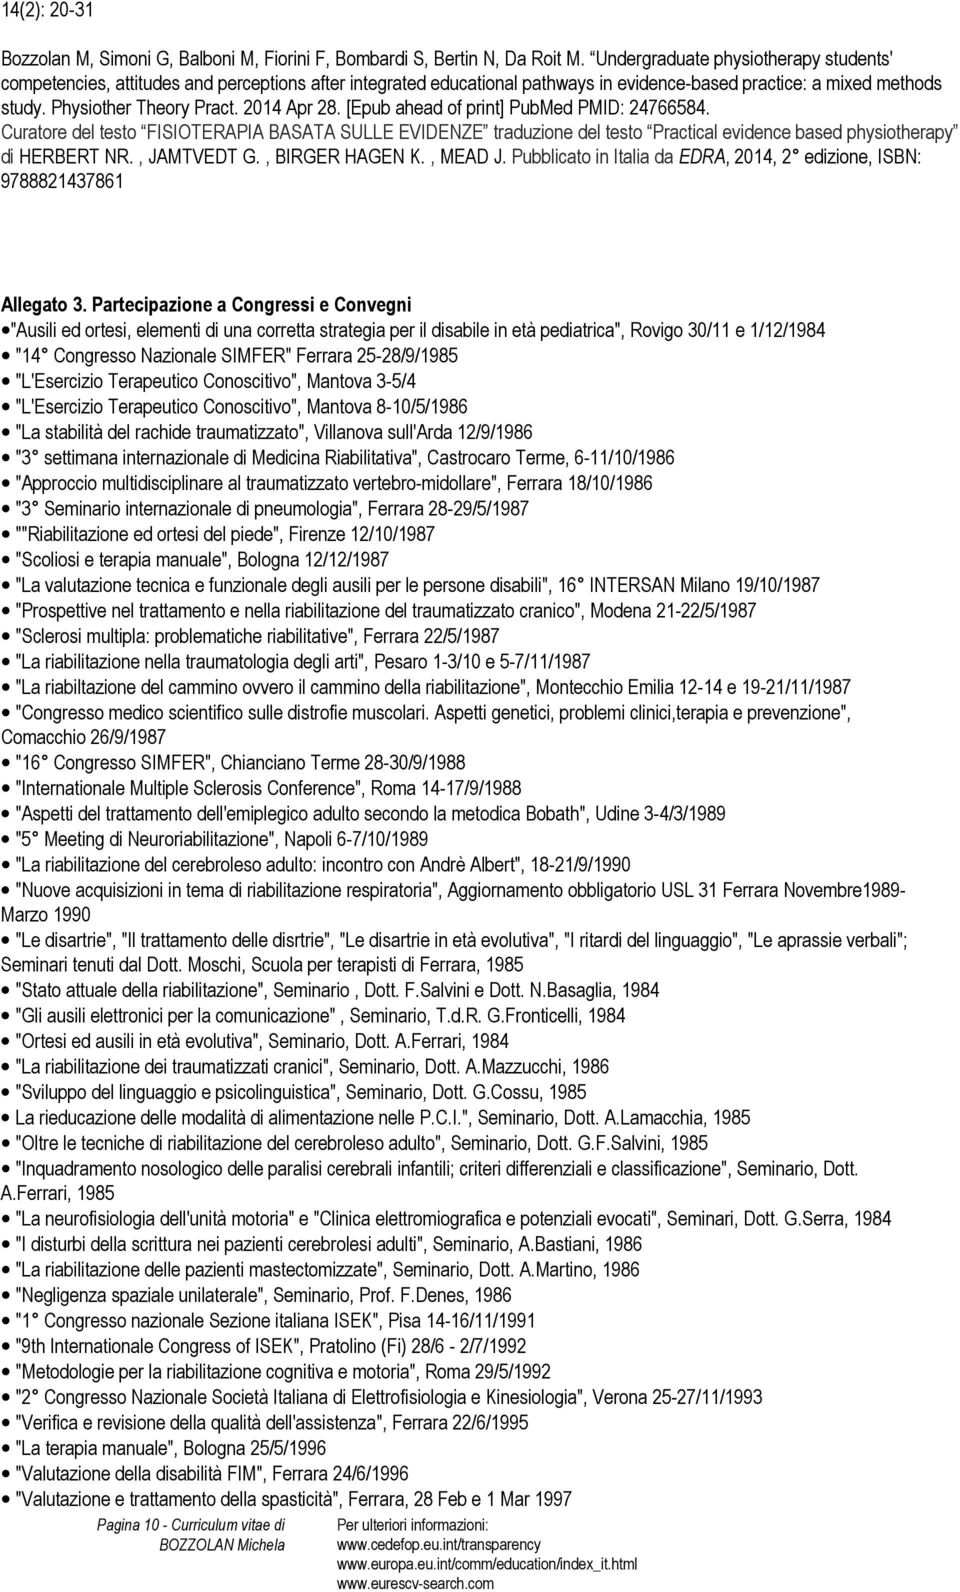 2014 Apr 28. [Epub ahead of print] PubMed PMID: 24766584. Curatore del testo FISIOTERAPIA BASATA SULLE EVIDENZE traduzione del testo Practical evidence based physiotherapy di HERBERT NR., JAMTVEDT G.